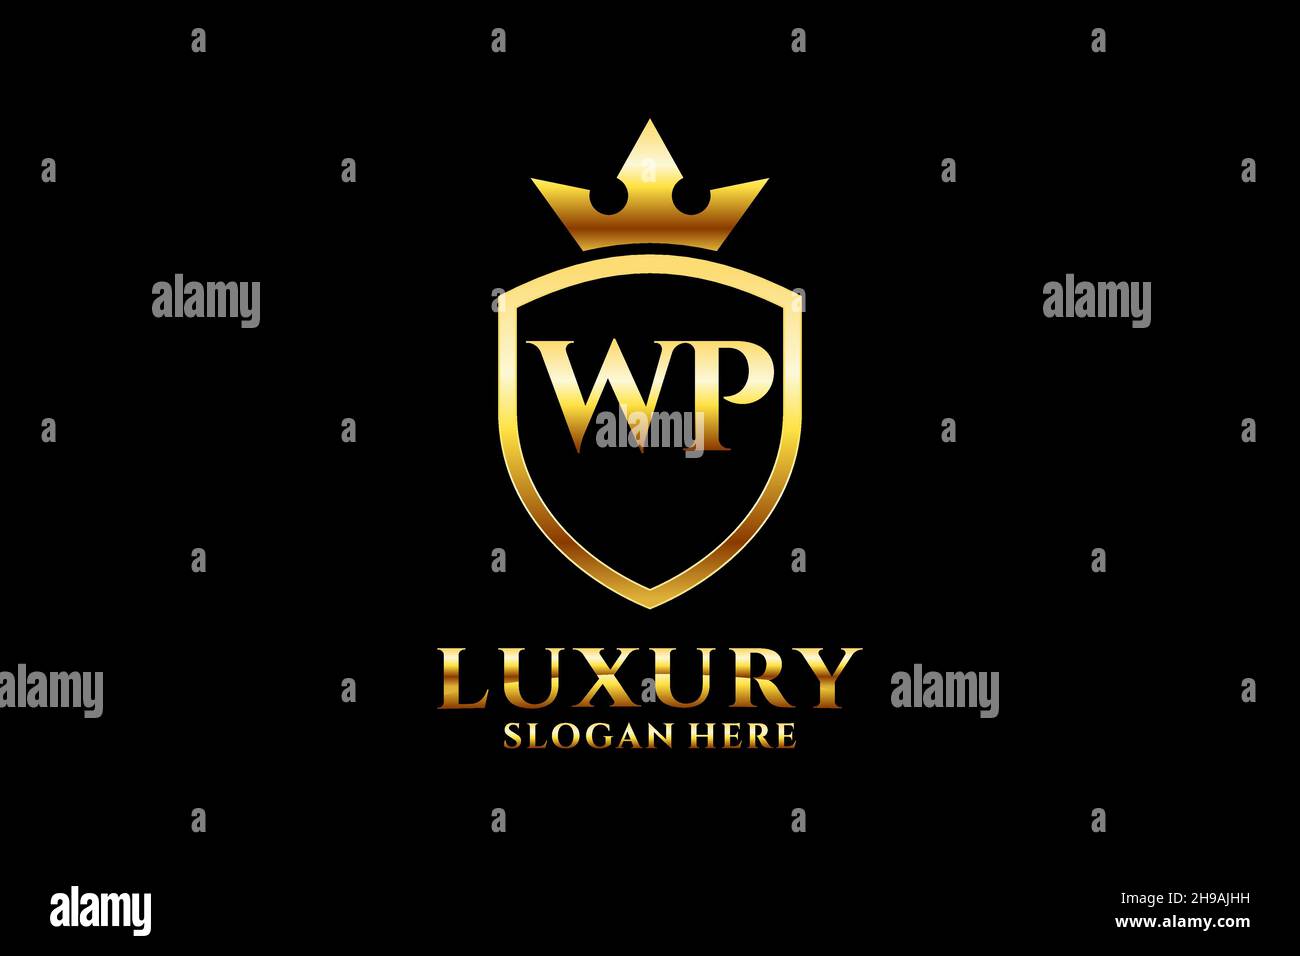 WP Elegantes Luxus-Monogramm-Logo oder Badge-Vorlage mit Rollen und königlicher Krone - perfekt für luxuriöse Branding-Projekte Stock Vektor